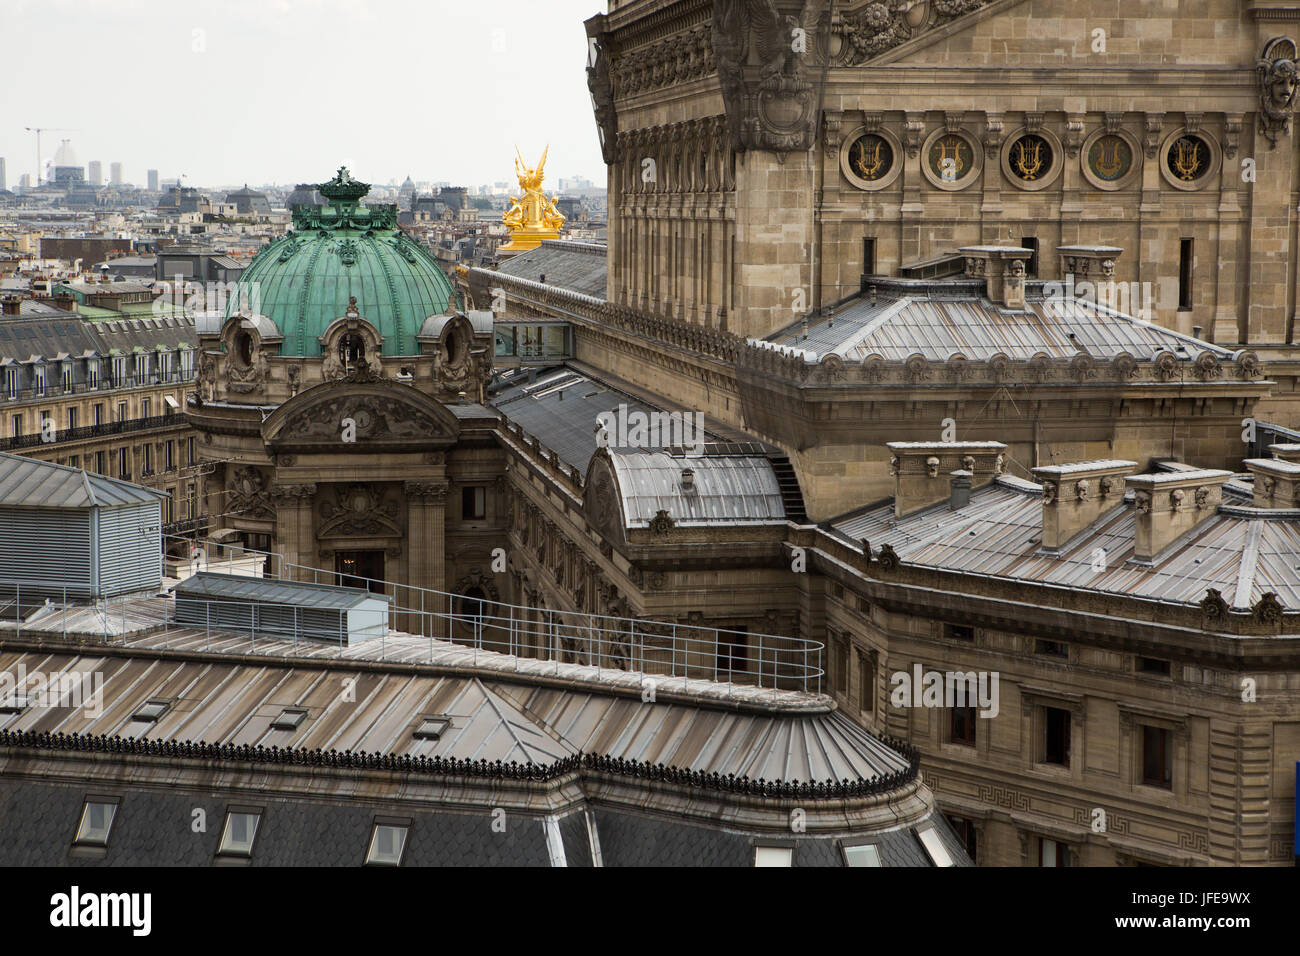 L'architecture de l'Opéra de Paris, Palais Garnier, à l'égard de la ville en toile de fond. Banque D'Images